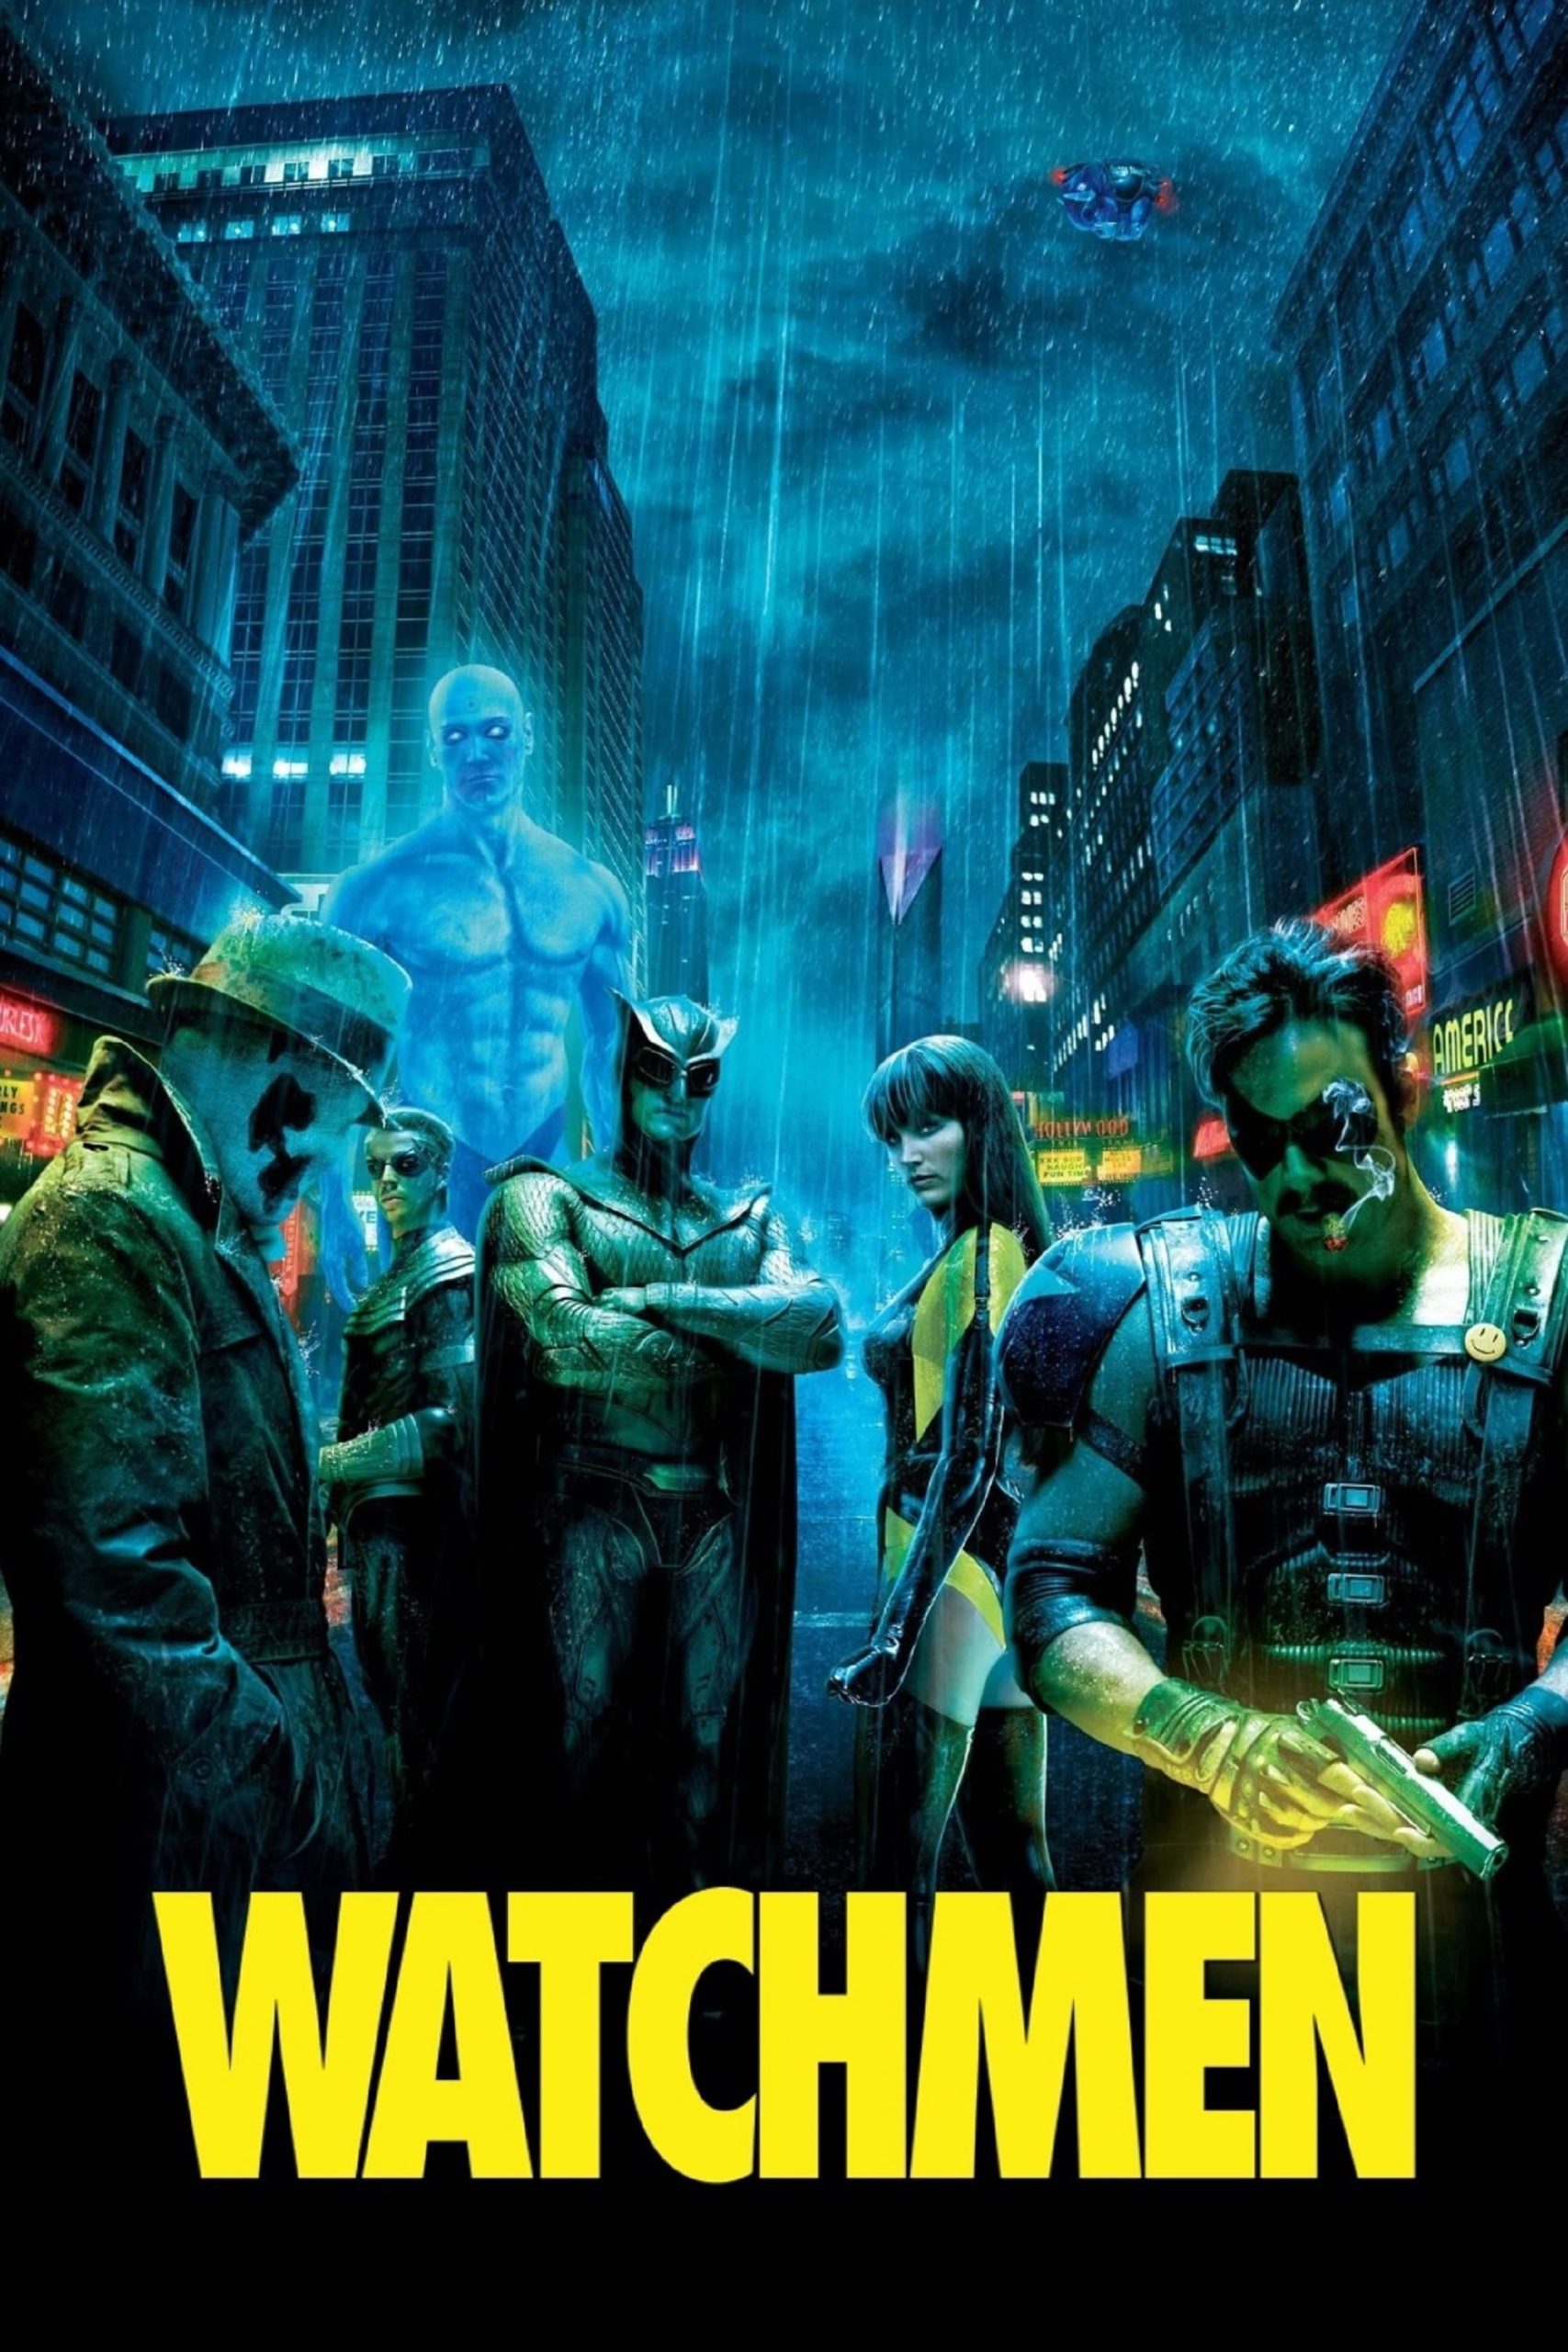 ดูหนังออนไลน์ Watchmen ศึกซูเปอร์ฮีโร่พันธุ์มหากาฬ